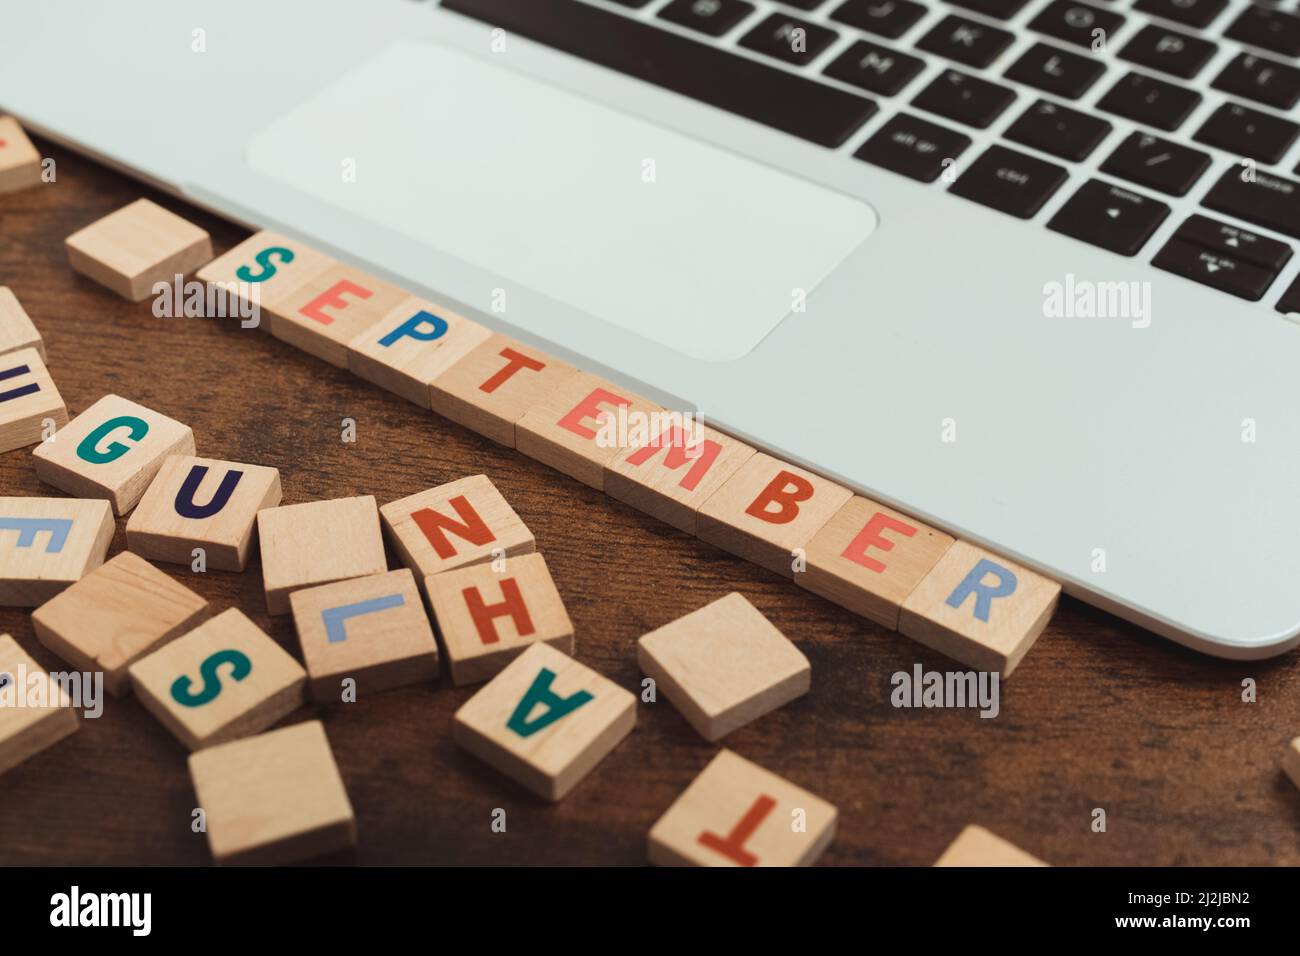 Septembre fait de lettres en bois coloré jeu de vocabulaire sur la table à côté de l'espace de copie d'ordinateur portable. Photo de haute qualité Banque D'Images